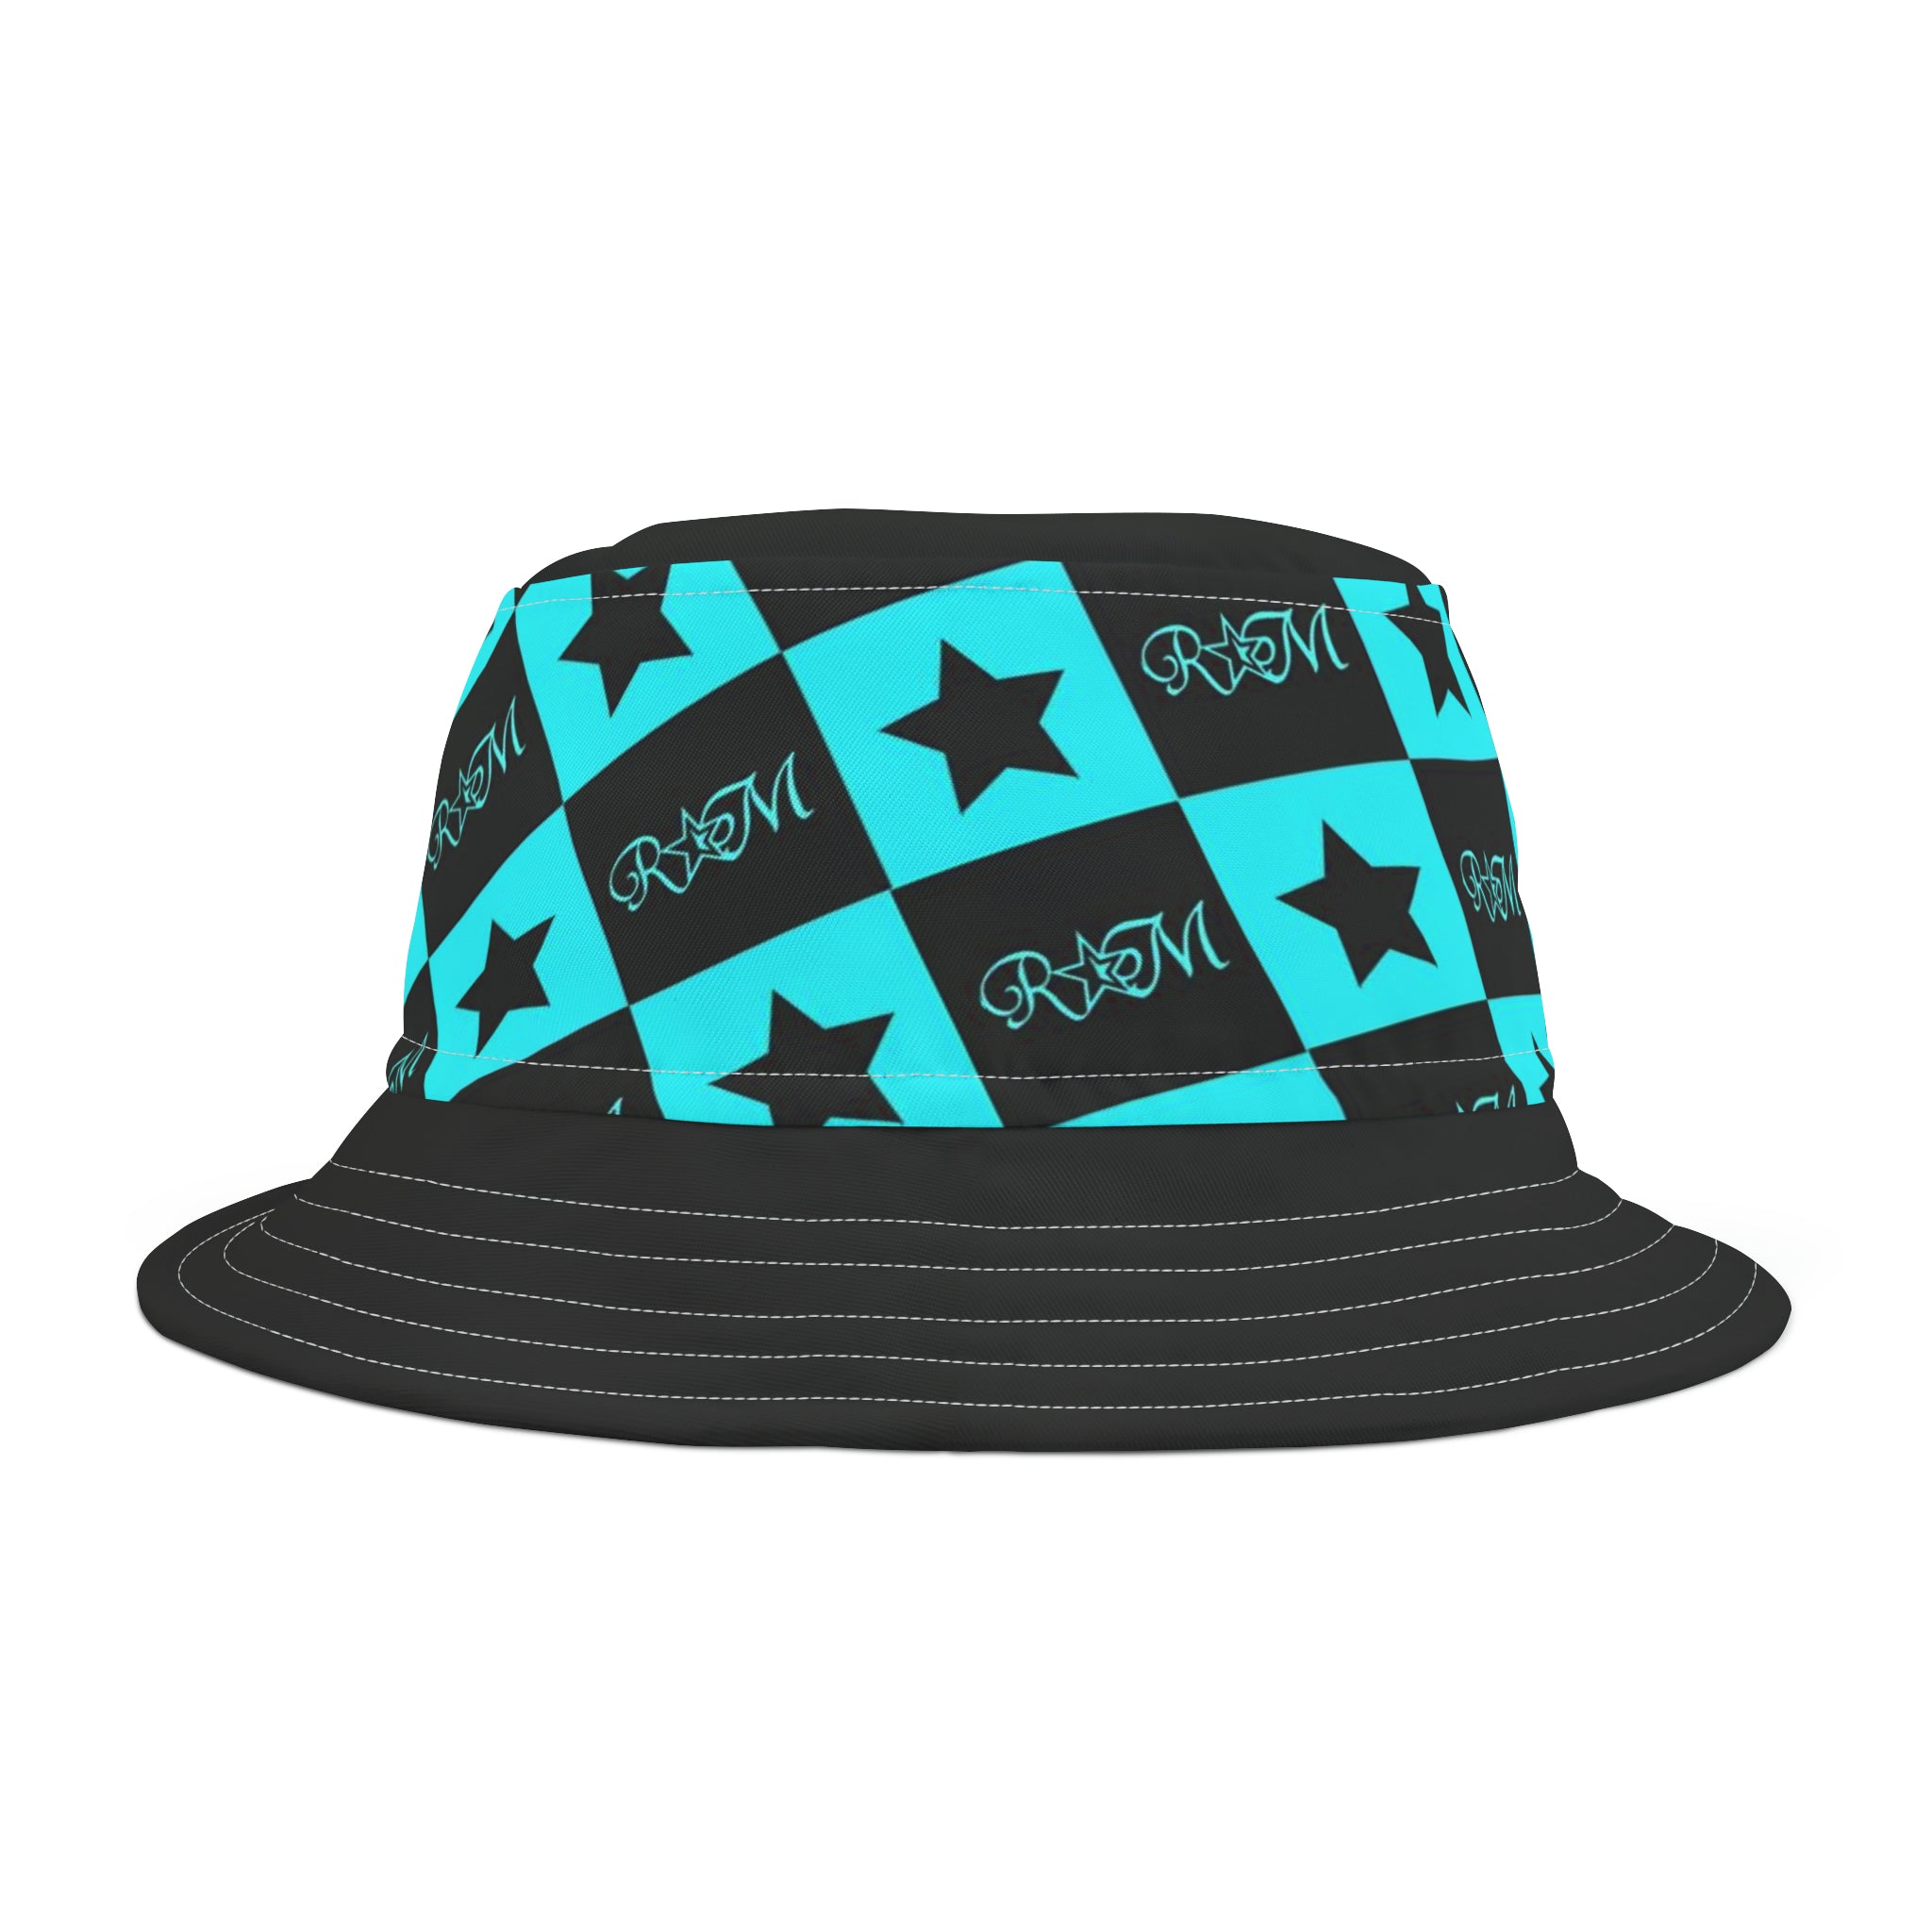 New AQU BLK Bucket Hat